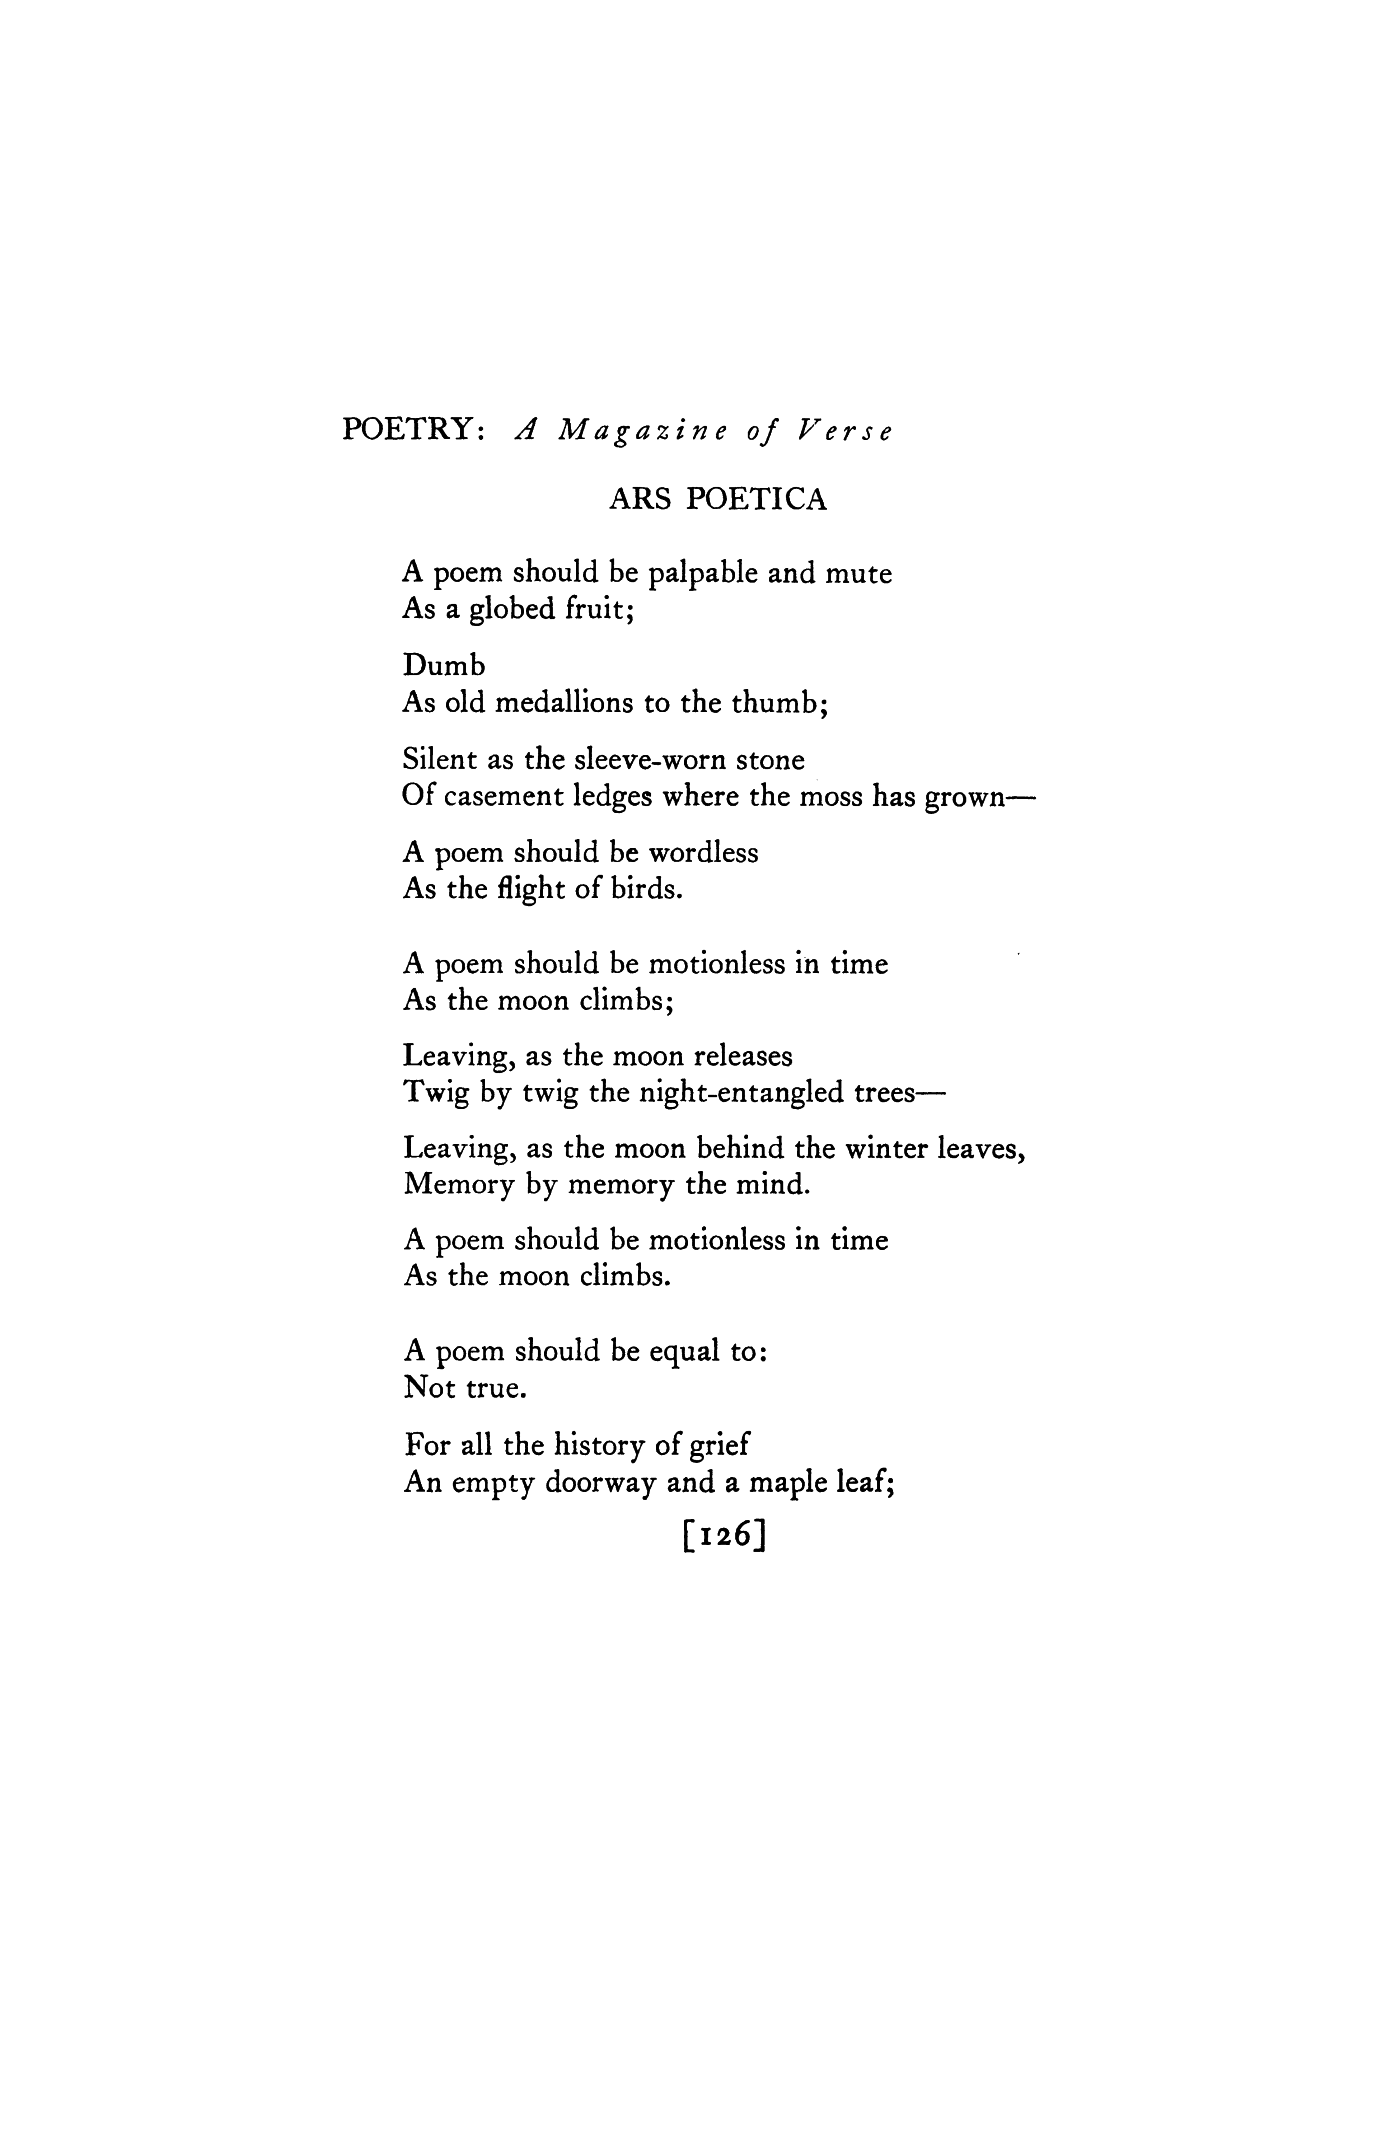 ars poetica poem